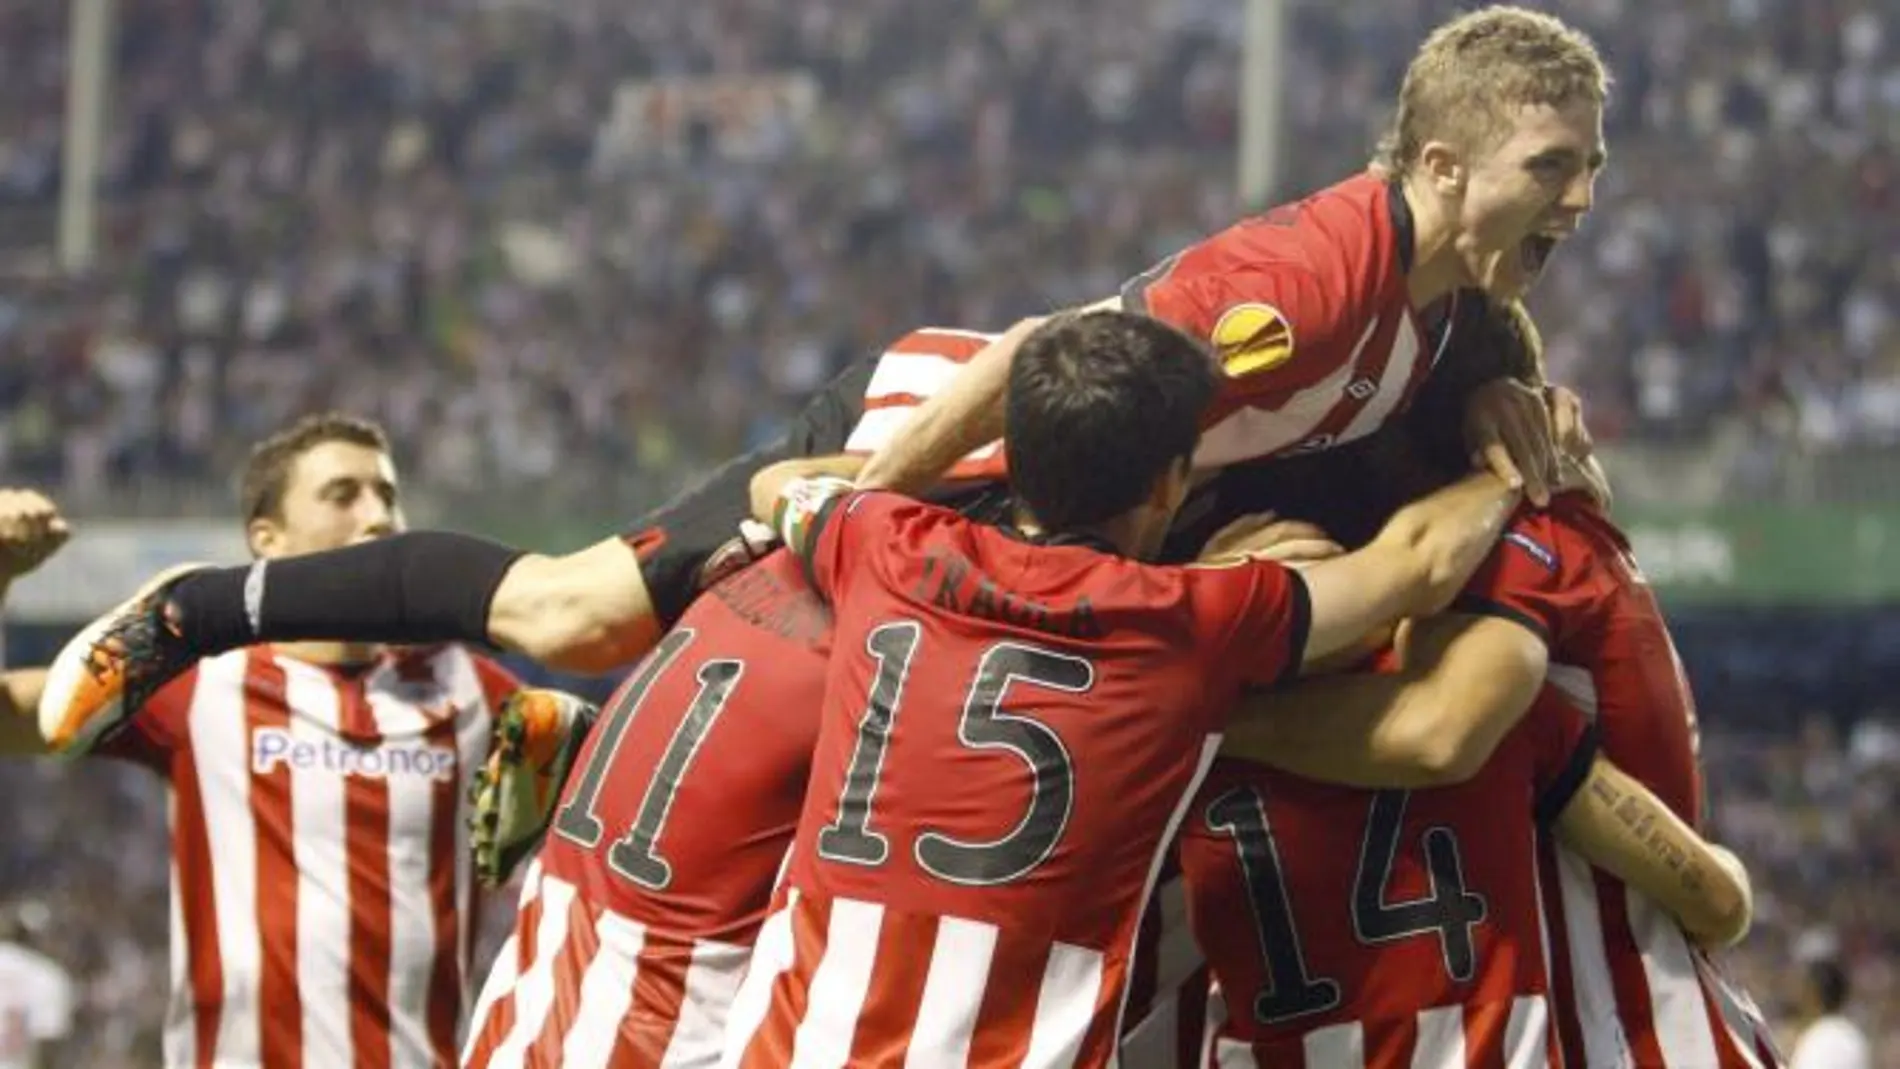 El delantero del Athletic Club de Bilbao Iker Muniain (arriba) celebra el gol marcado por su compañero, el centrocampista Markel Susaeta, ante el París Saint Germain